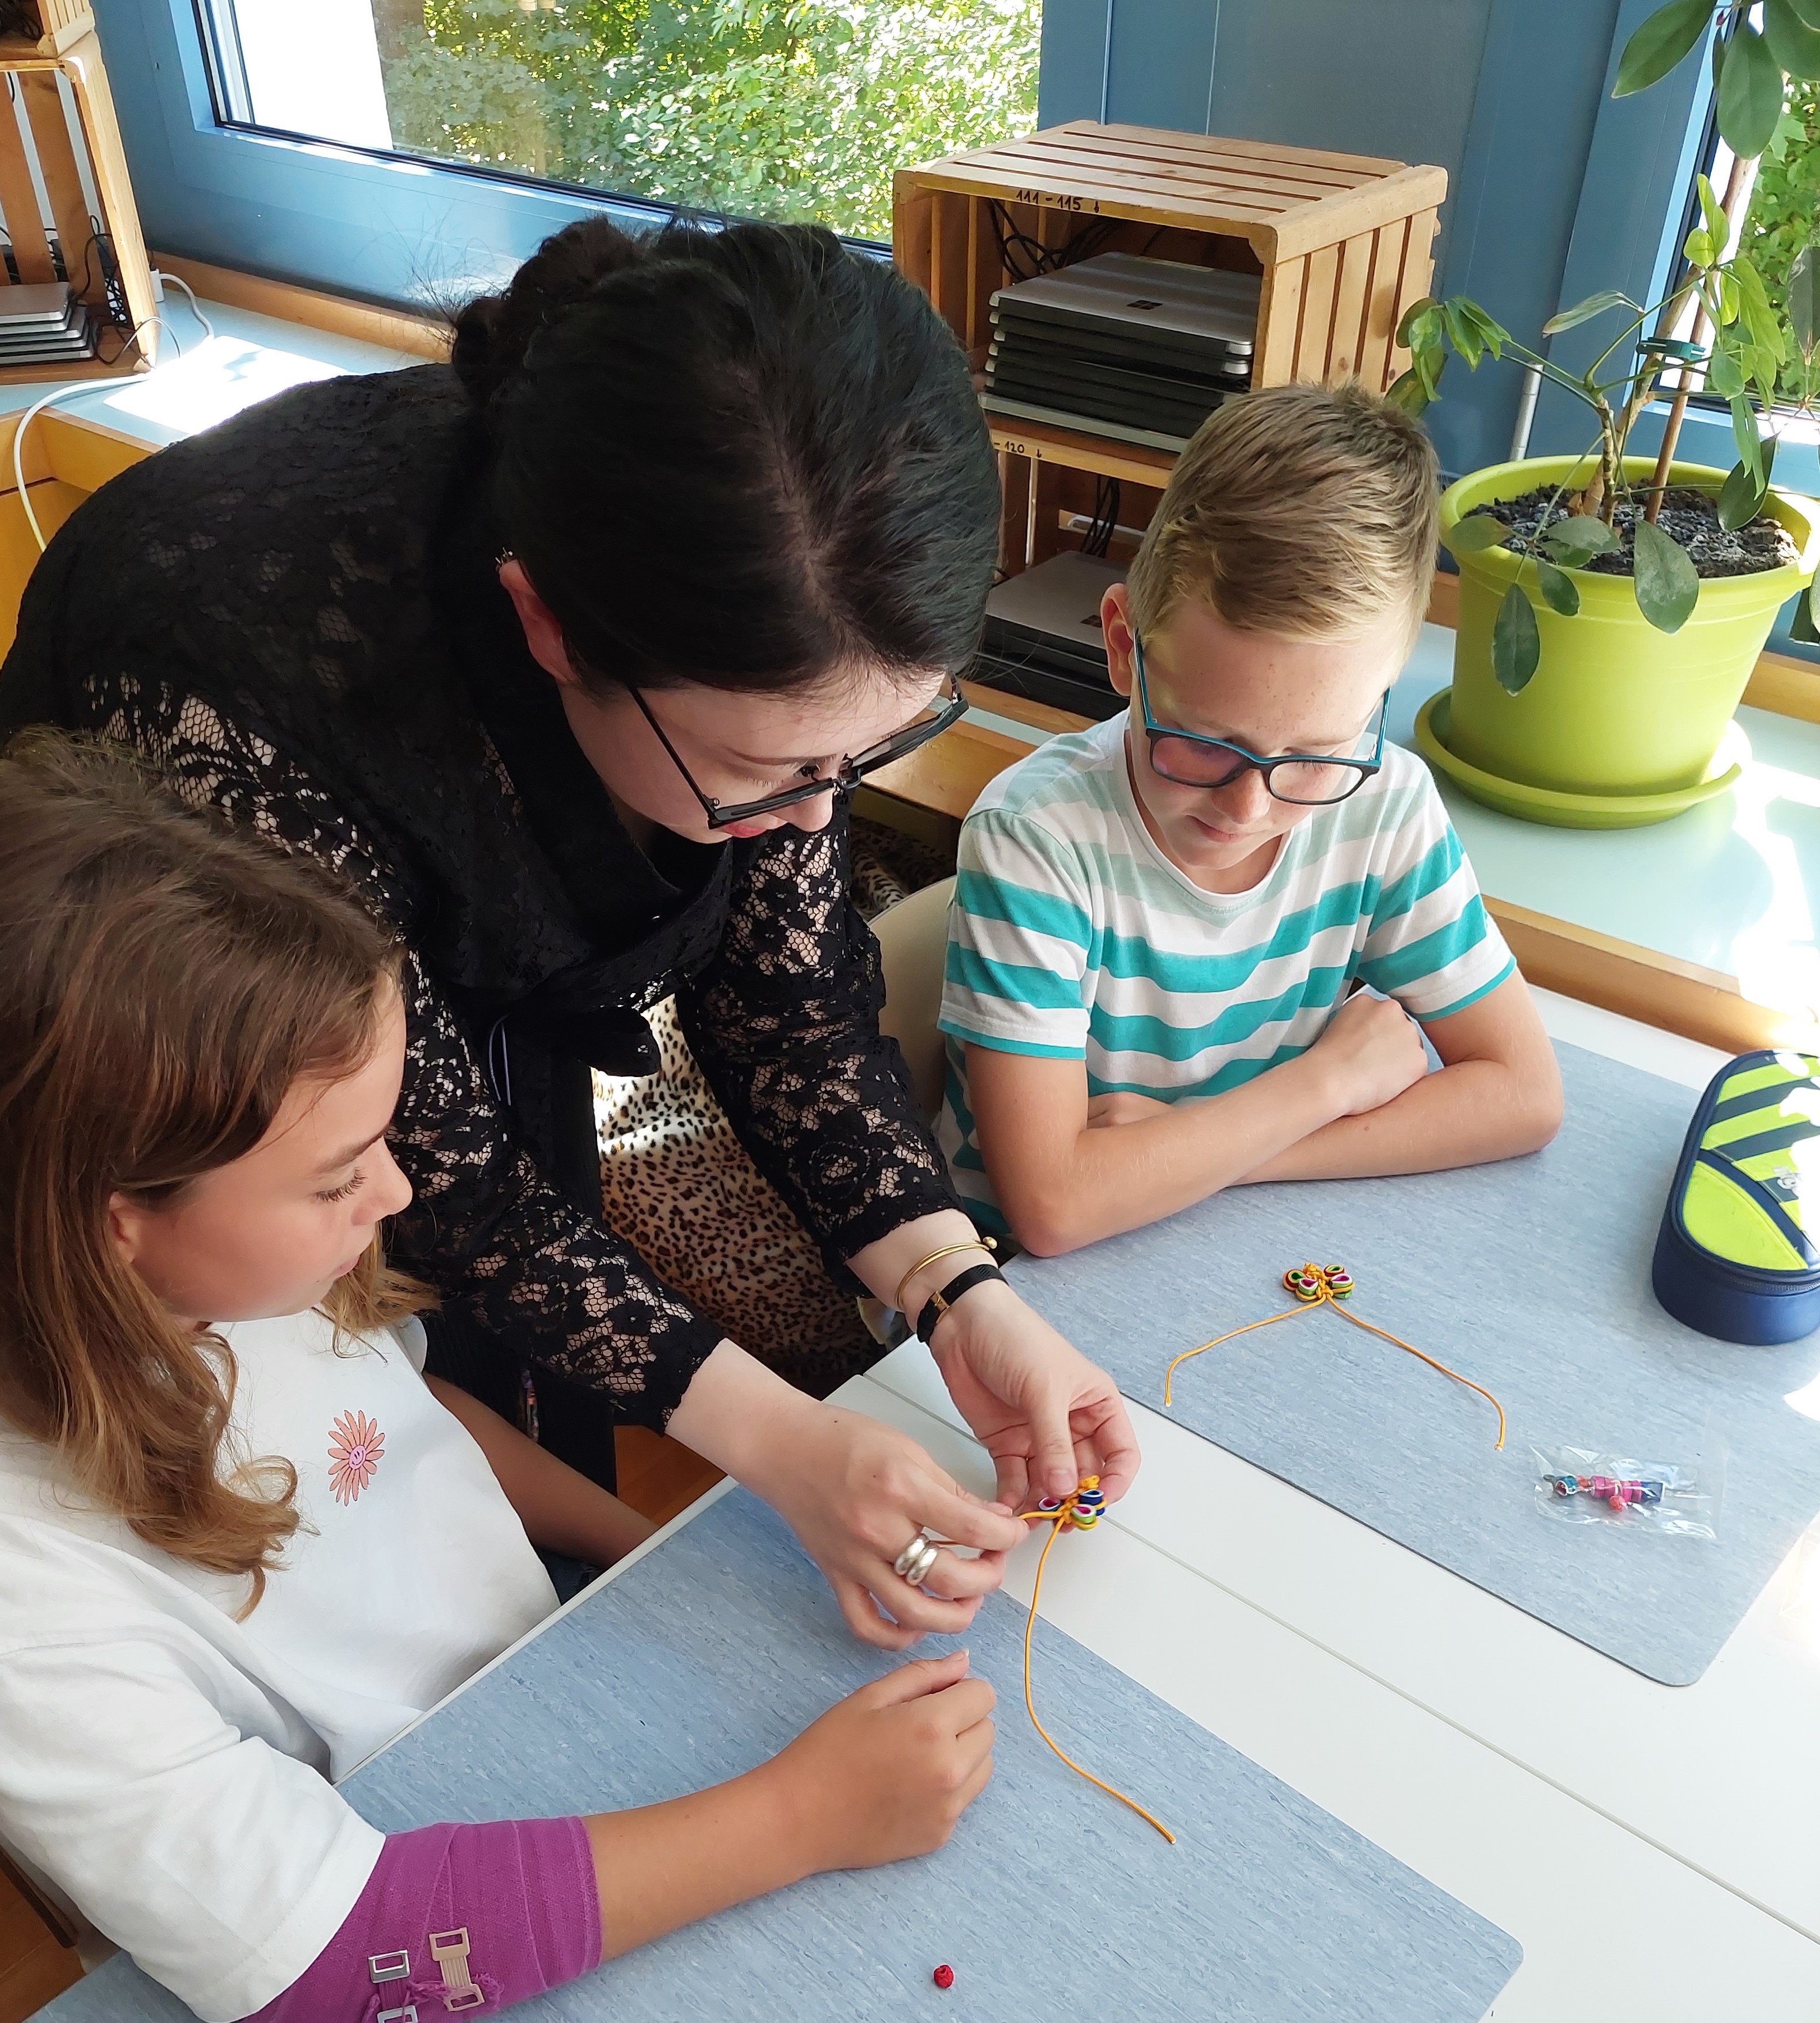 < 스위스 감스회플리초등학교에서 선보인 '매듭공예 수업' - 출처: 통신원 촬영 >